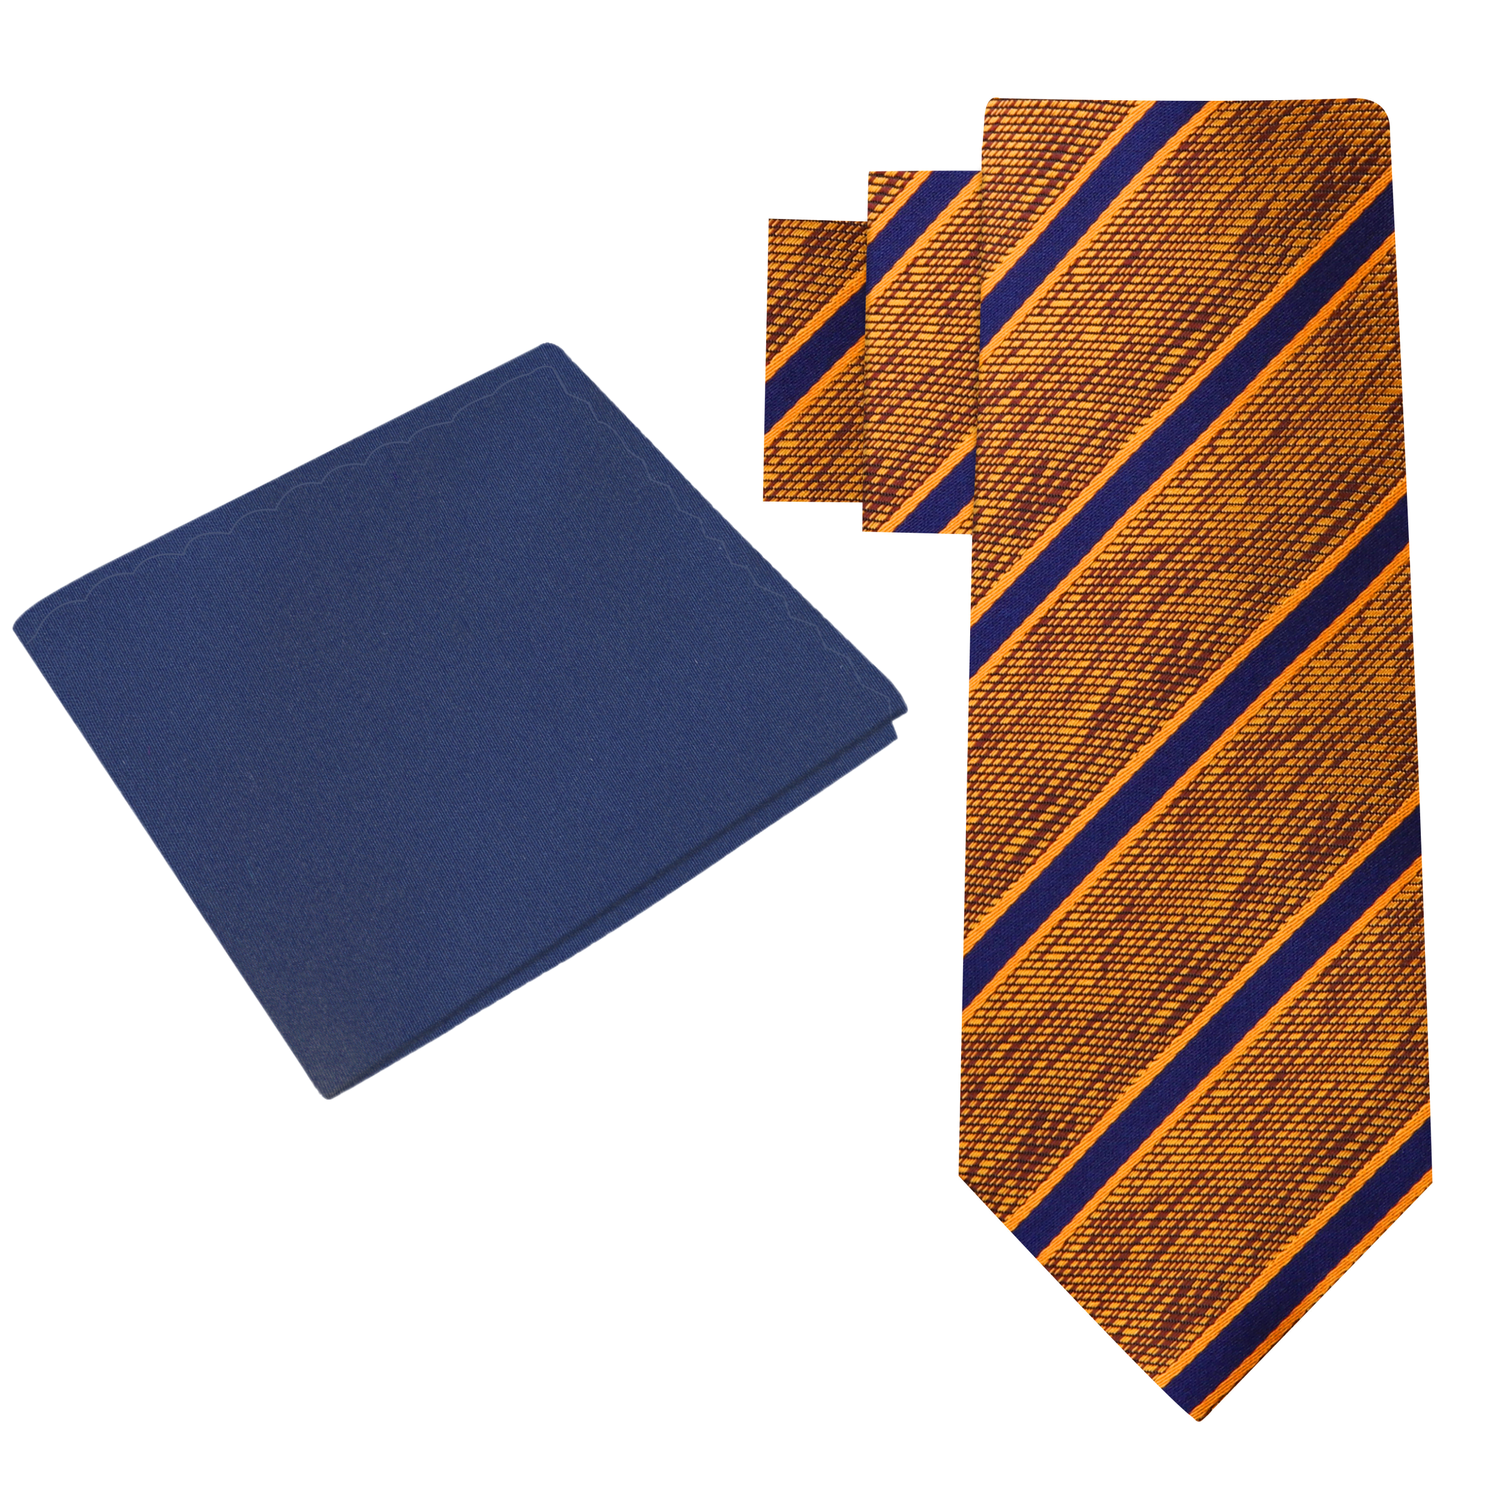 Alt View: Orange, Brown, Blue Stripe Necktie with Blue Square